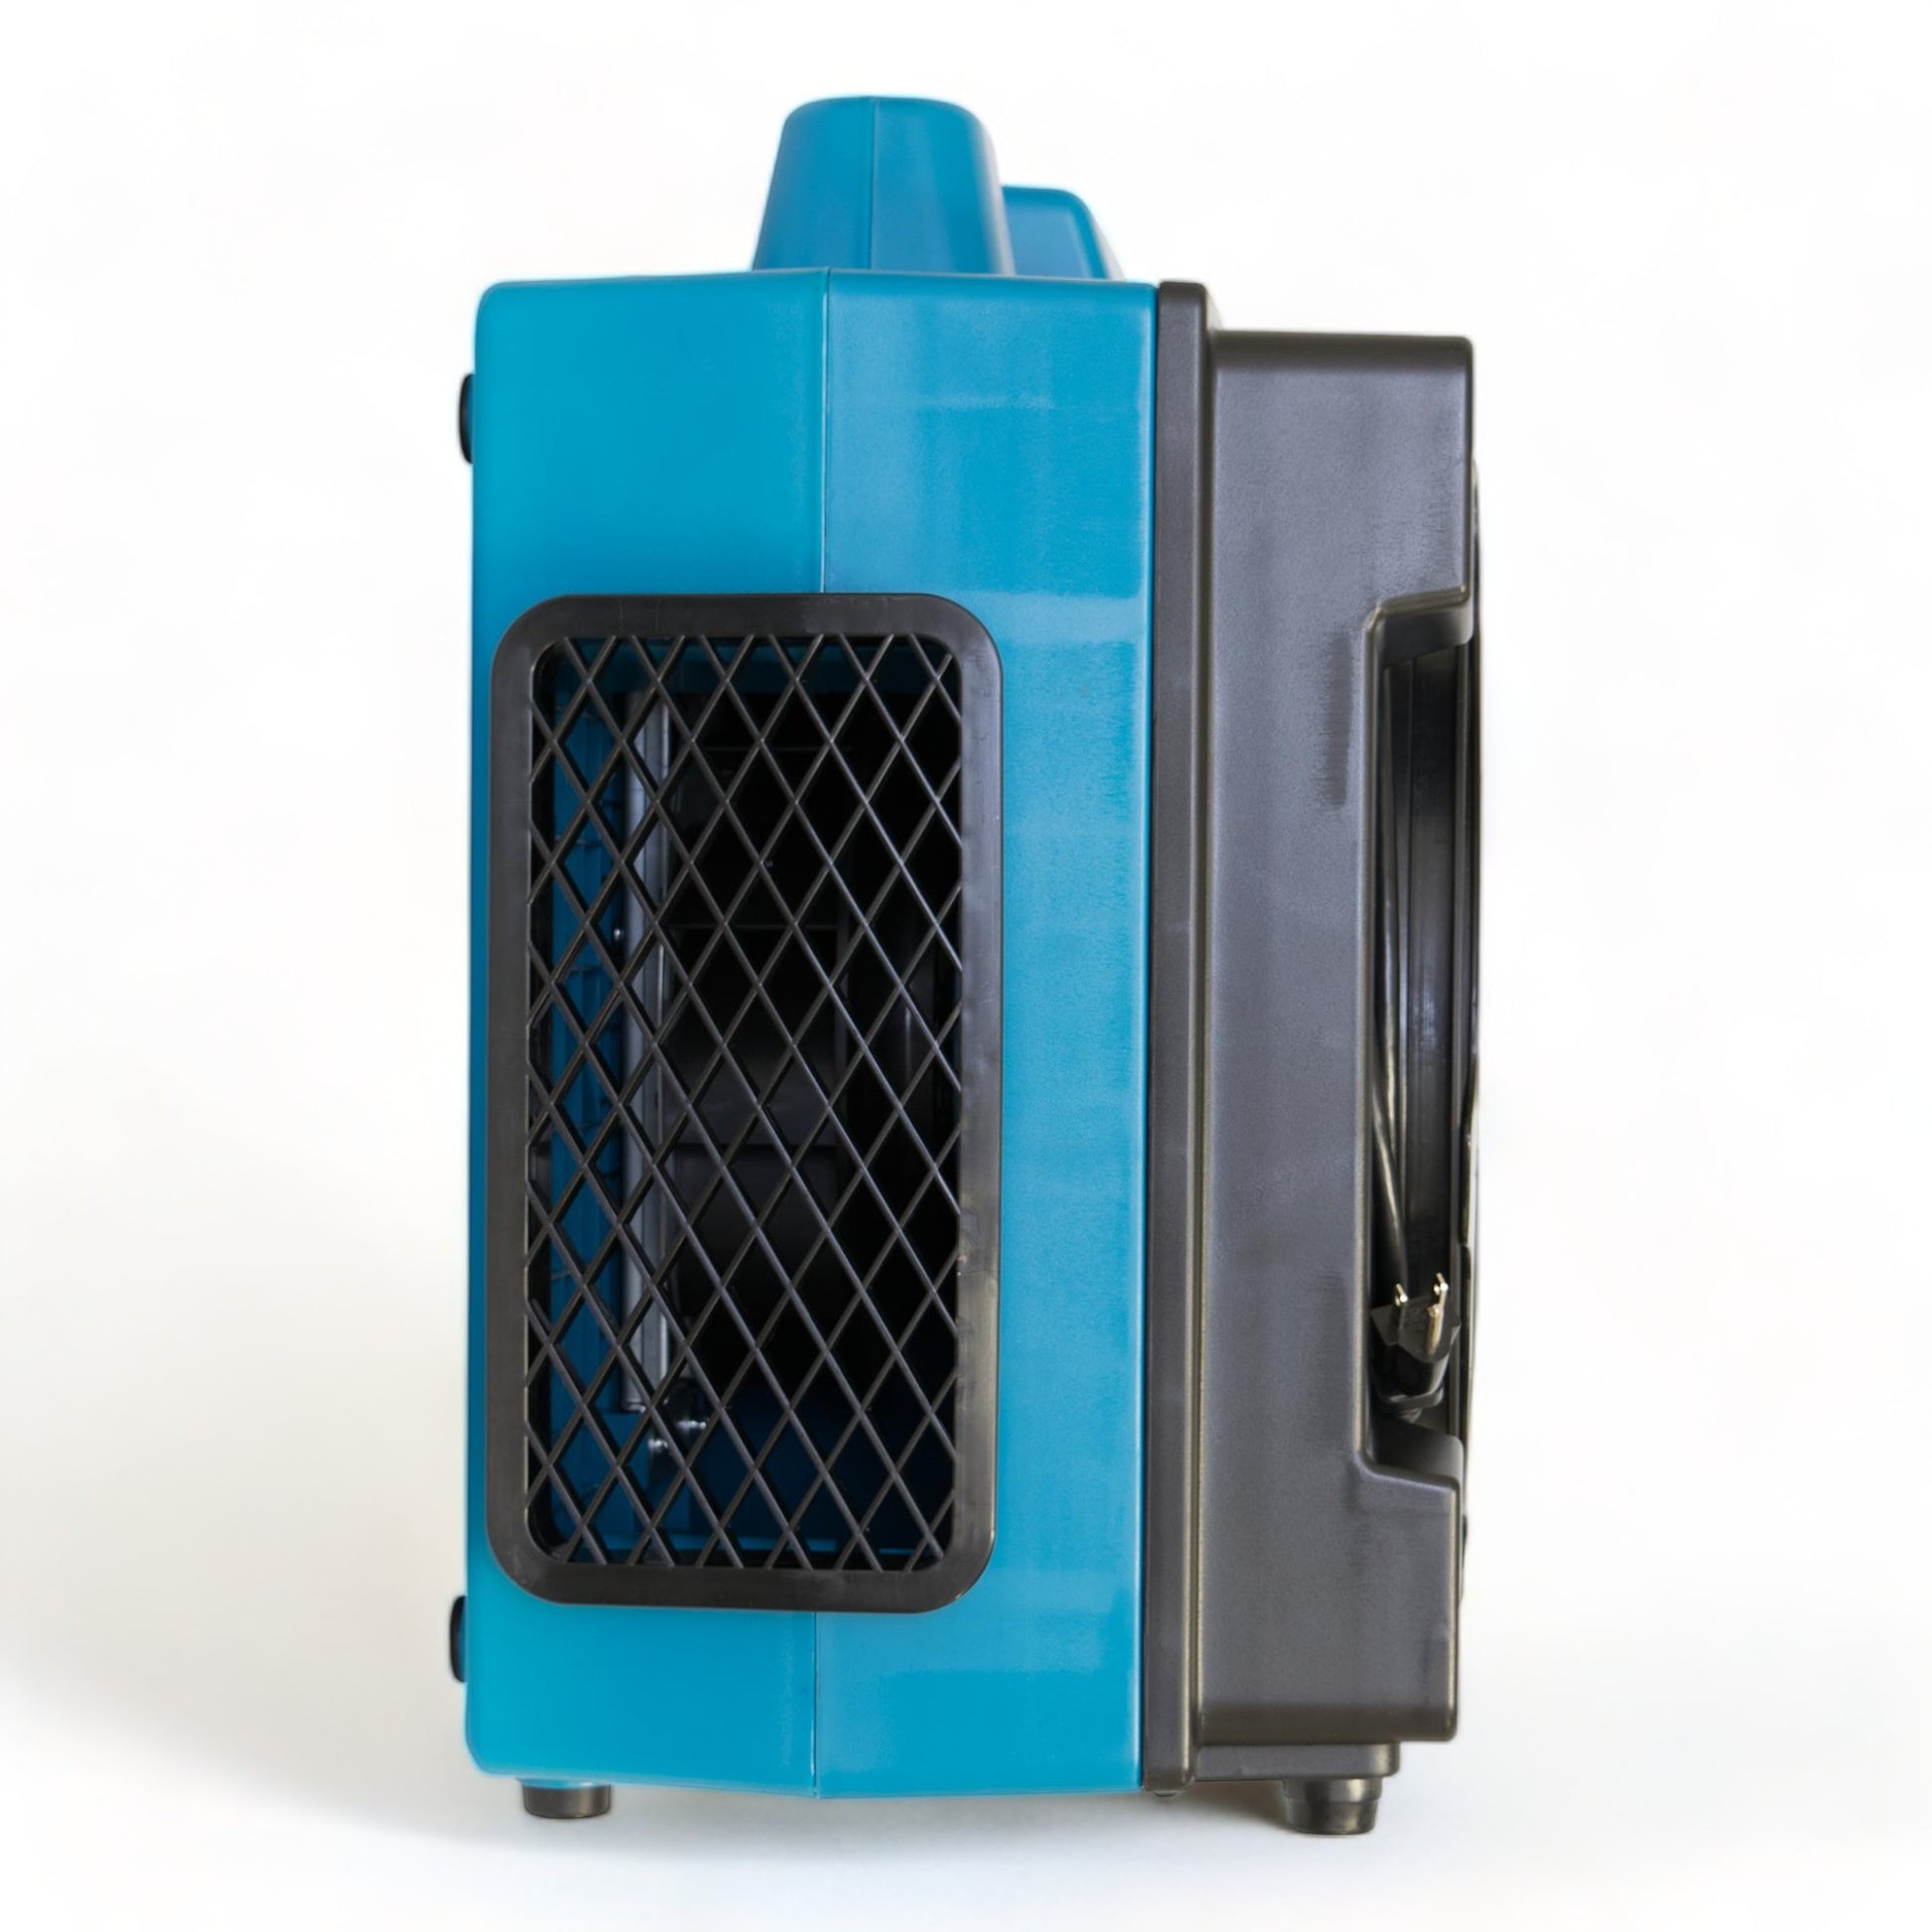 XPower X3580 600CFM 1/2HP 5 速 4 级 HEPA 空气洗涤器